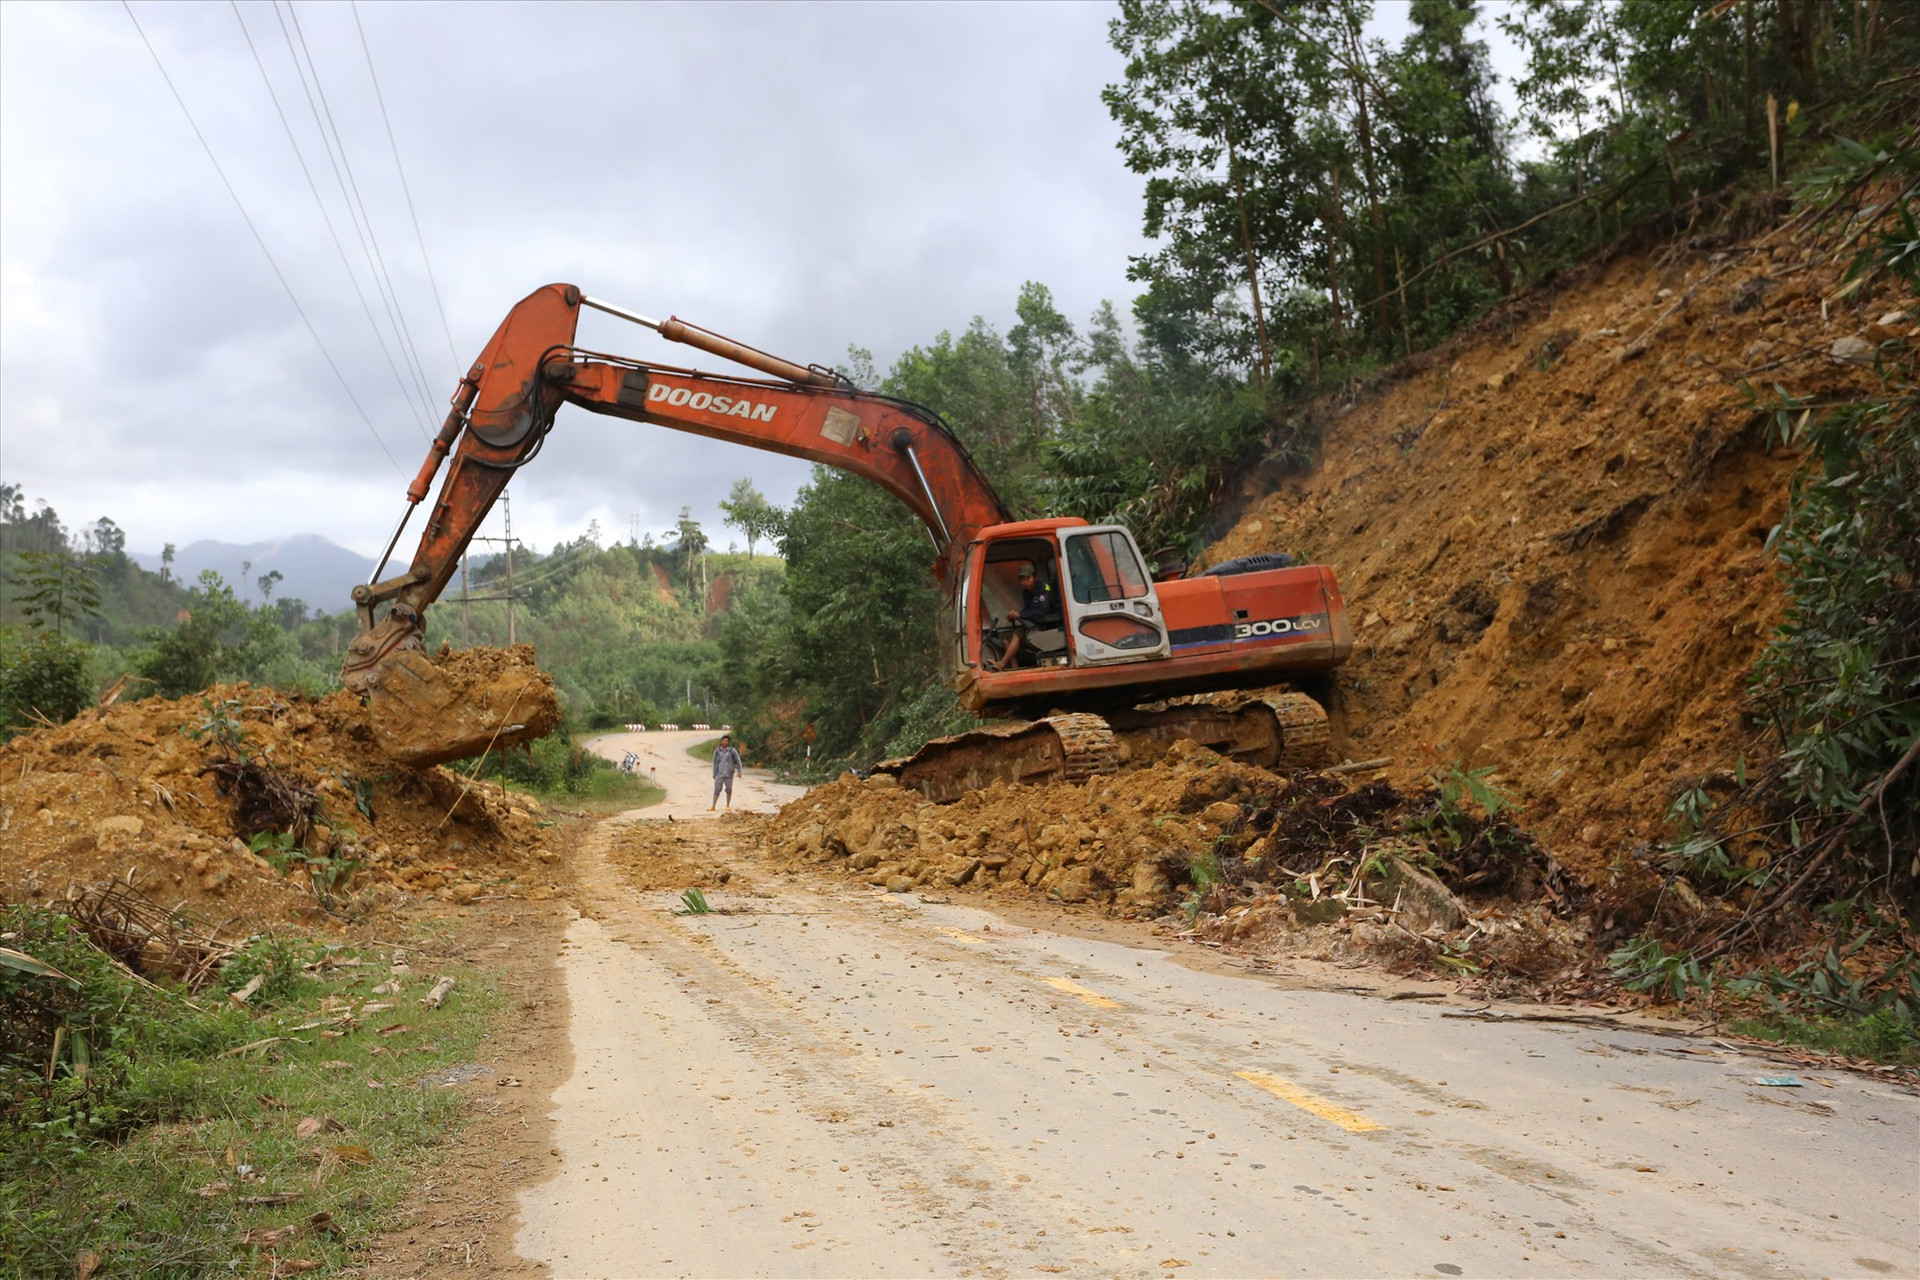 Ngày 25/11, Công ty Cổ phần Xây dựng Giao thông Quảng Nam, đơn vị quản lý quốc lộ 40B, tiếp tục cho phương tiện cơ giới thu dọn đất đá sạt lở xuống đường.